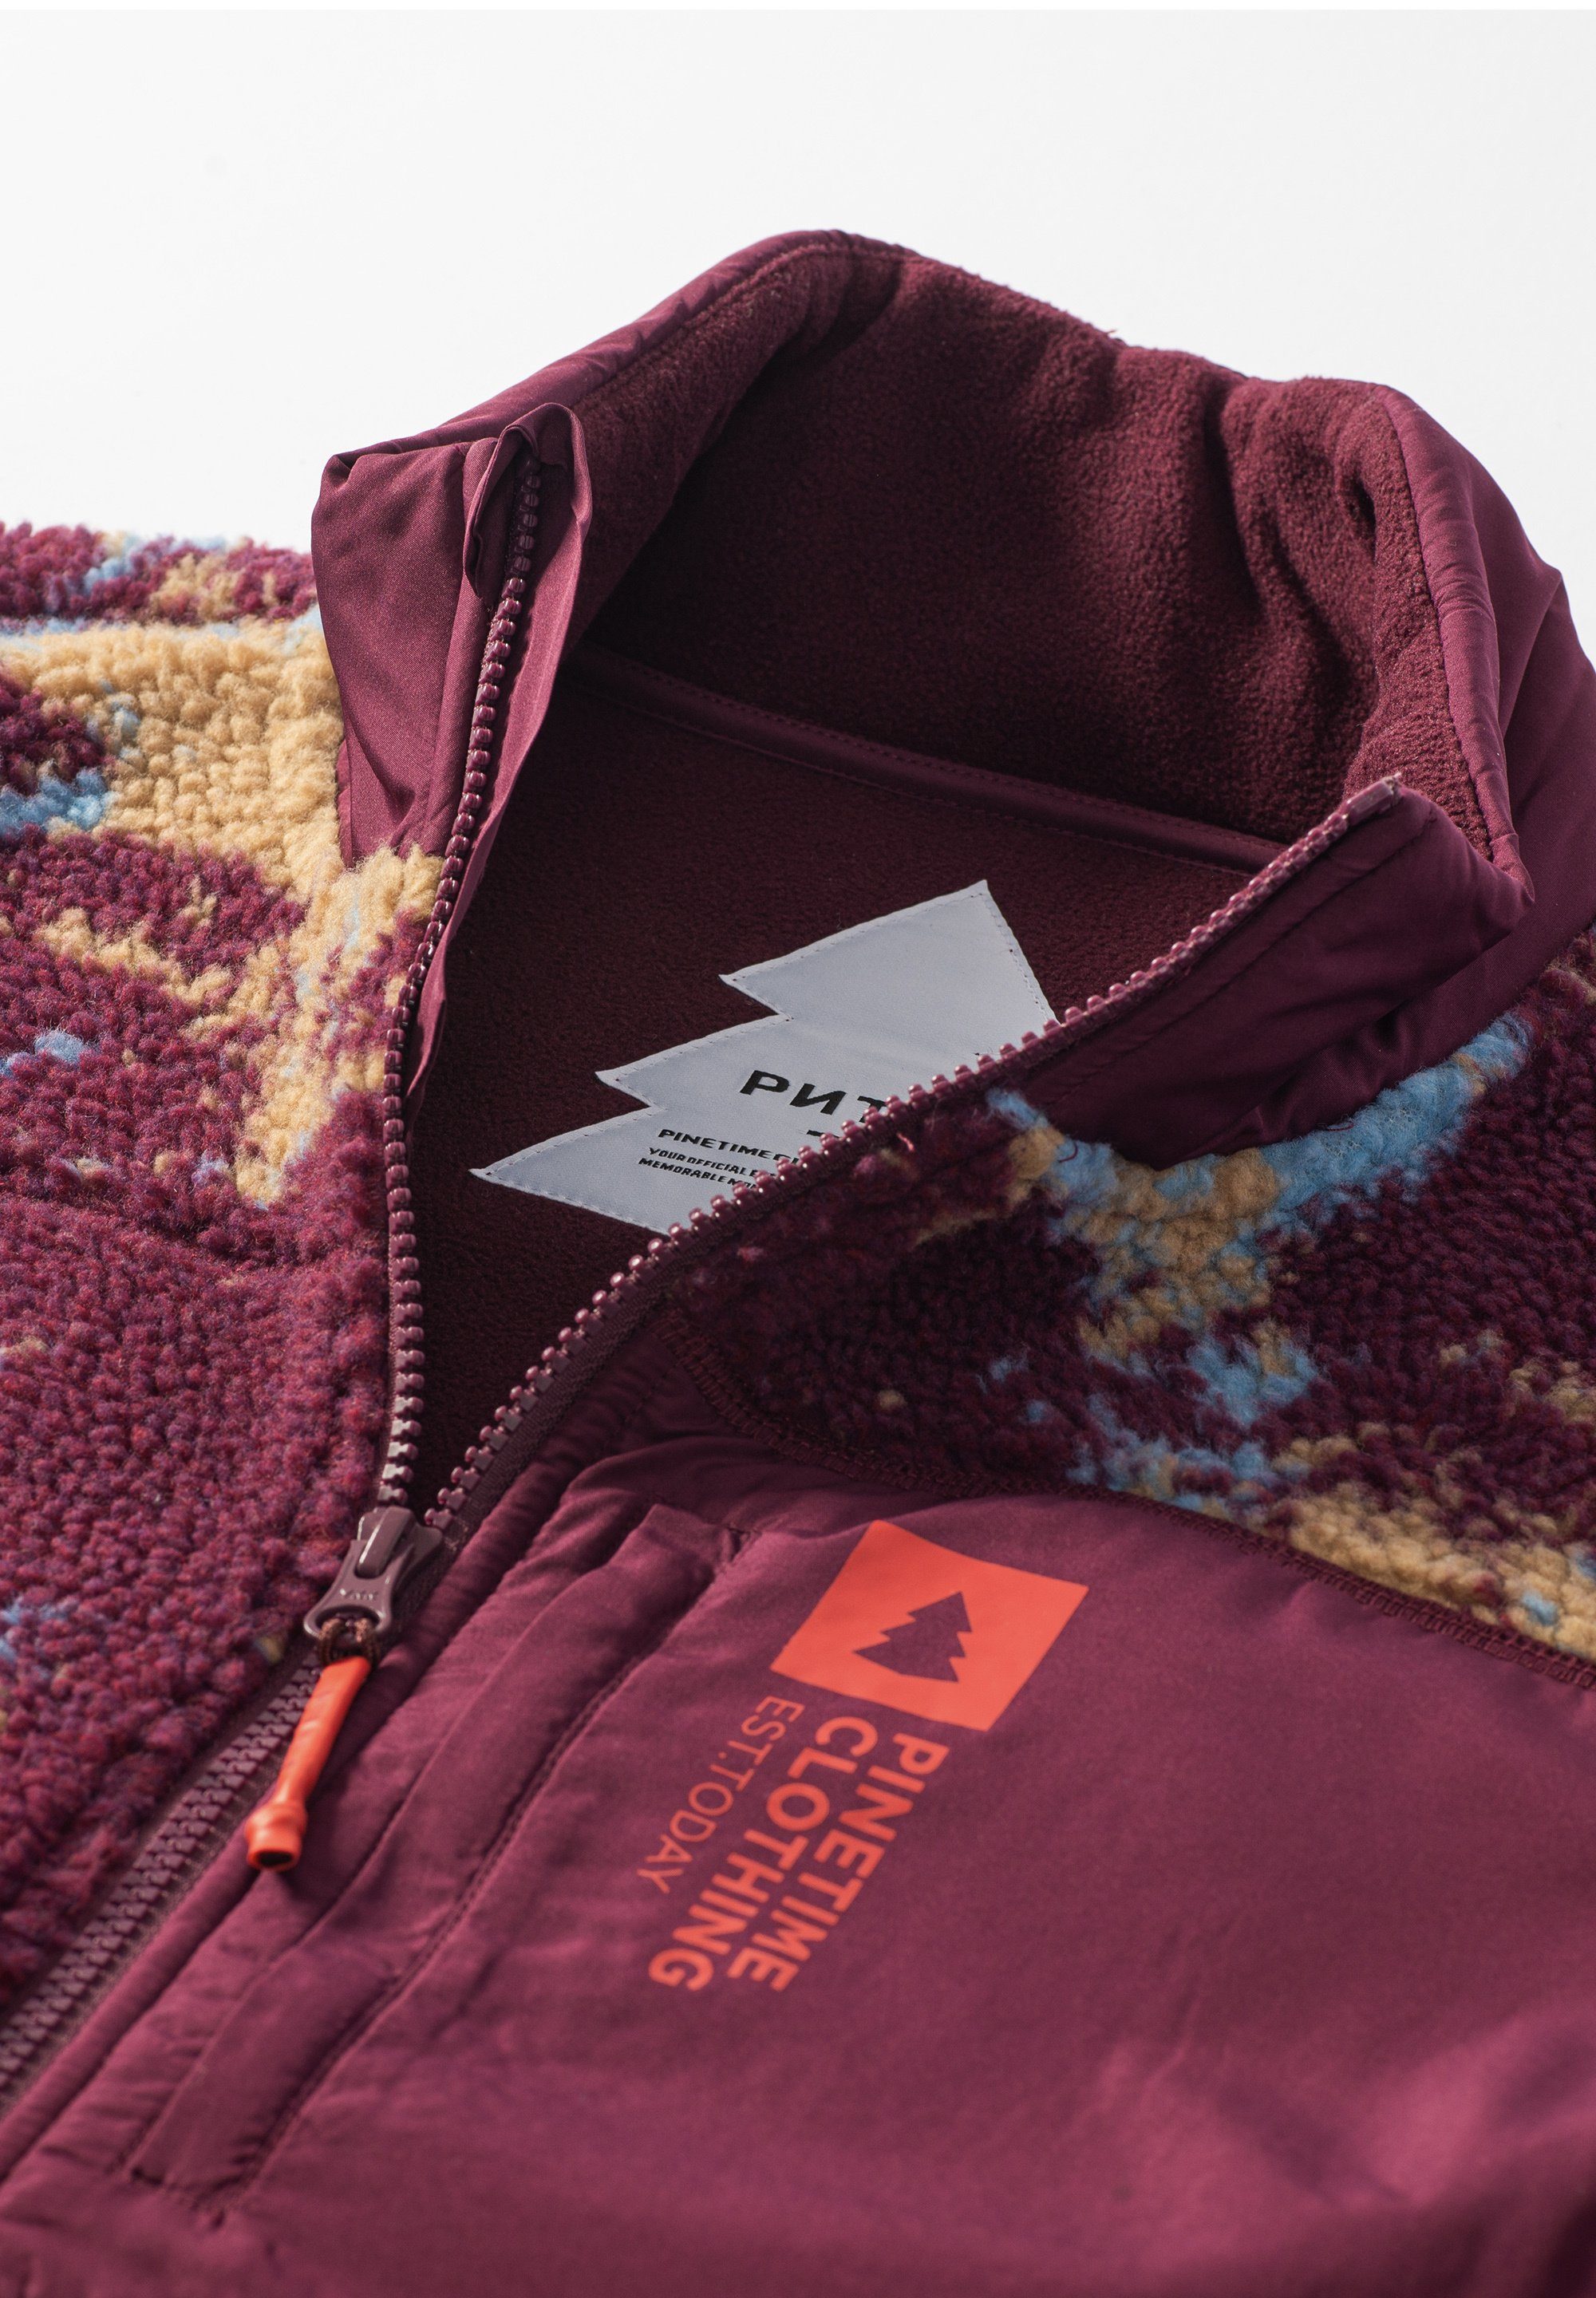 Pinetime Clothing Funktionsweste ruby für Wärme bietet Sherpa-Futter Tage außergewöhnliche kühle The Vest Moss